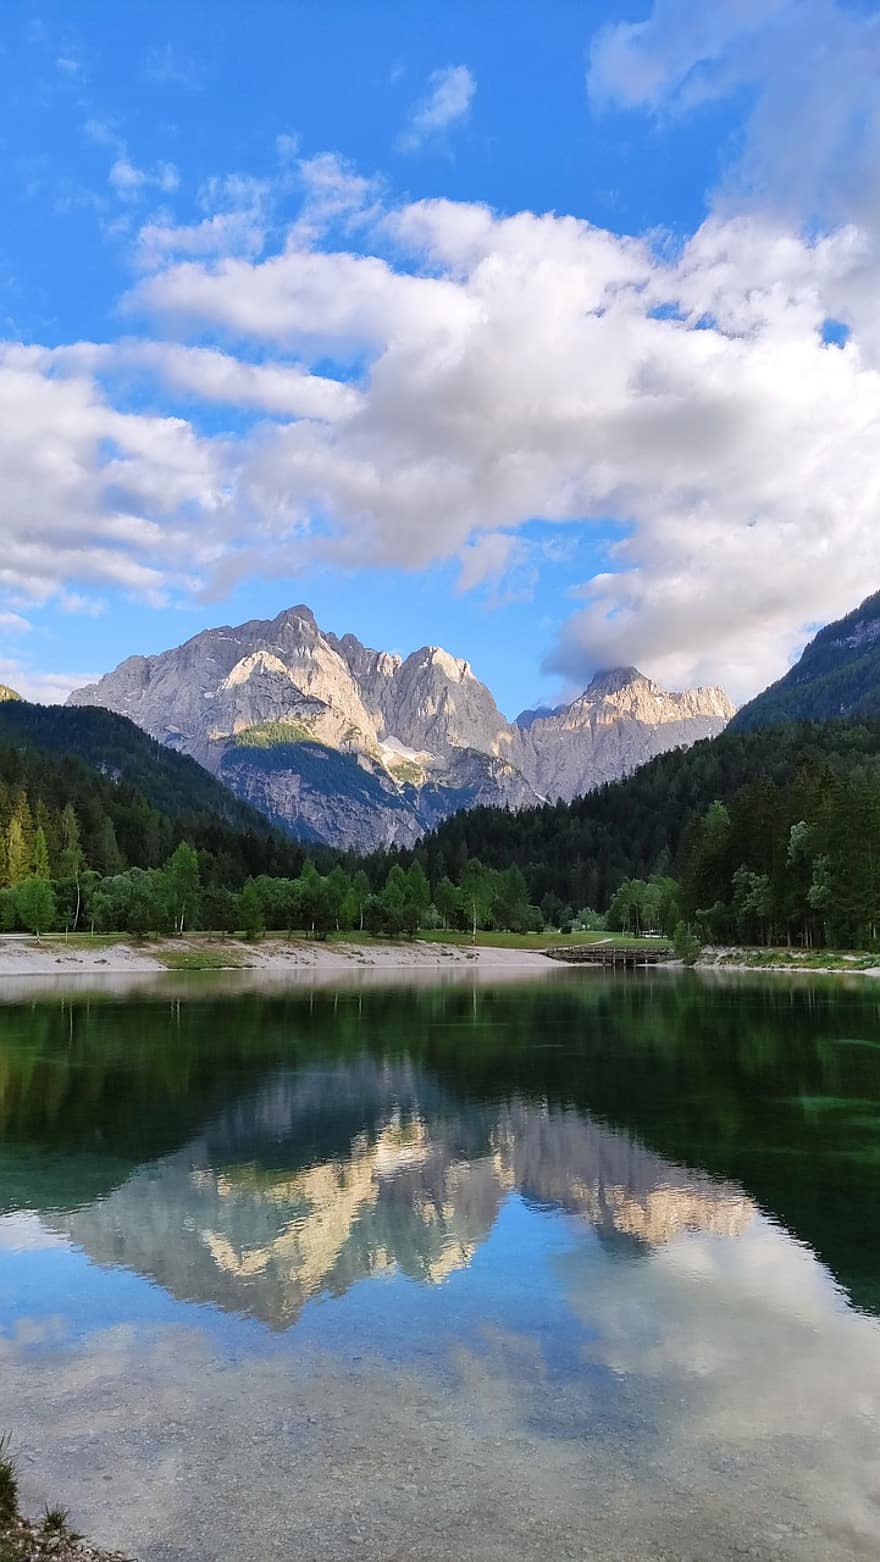 meer, berg-, landschap, natuur, water, hemel, alpine, reflectie, buitenshuis, Slovenië